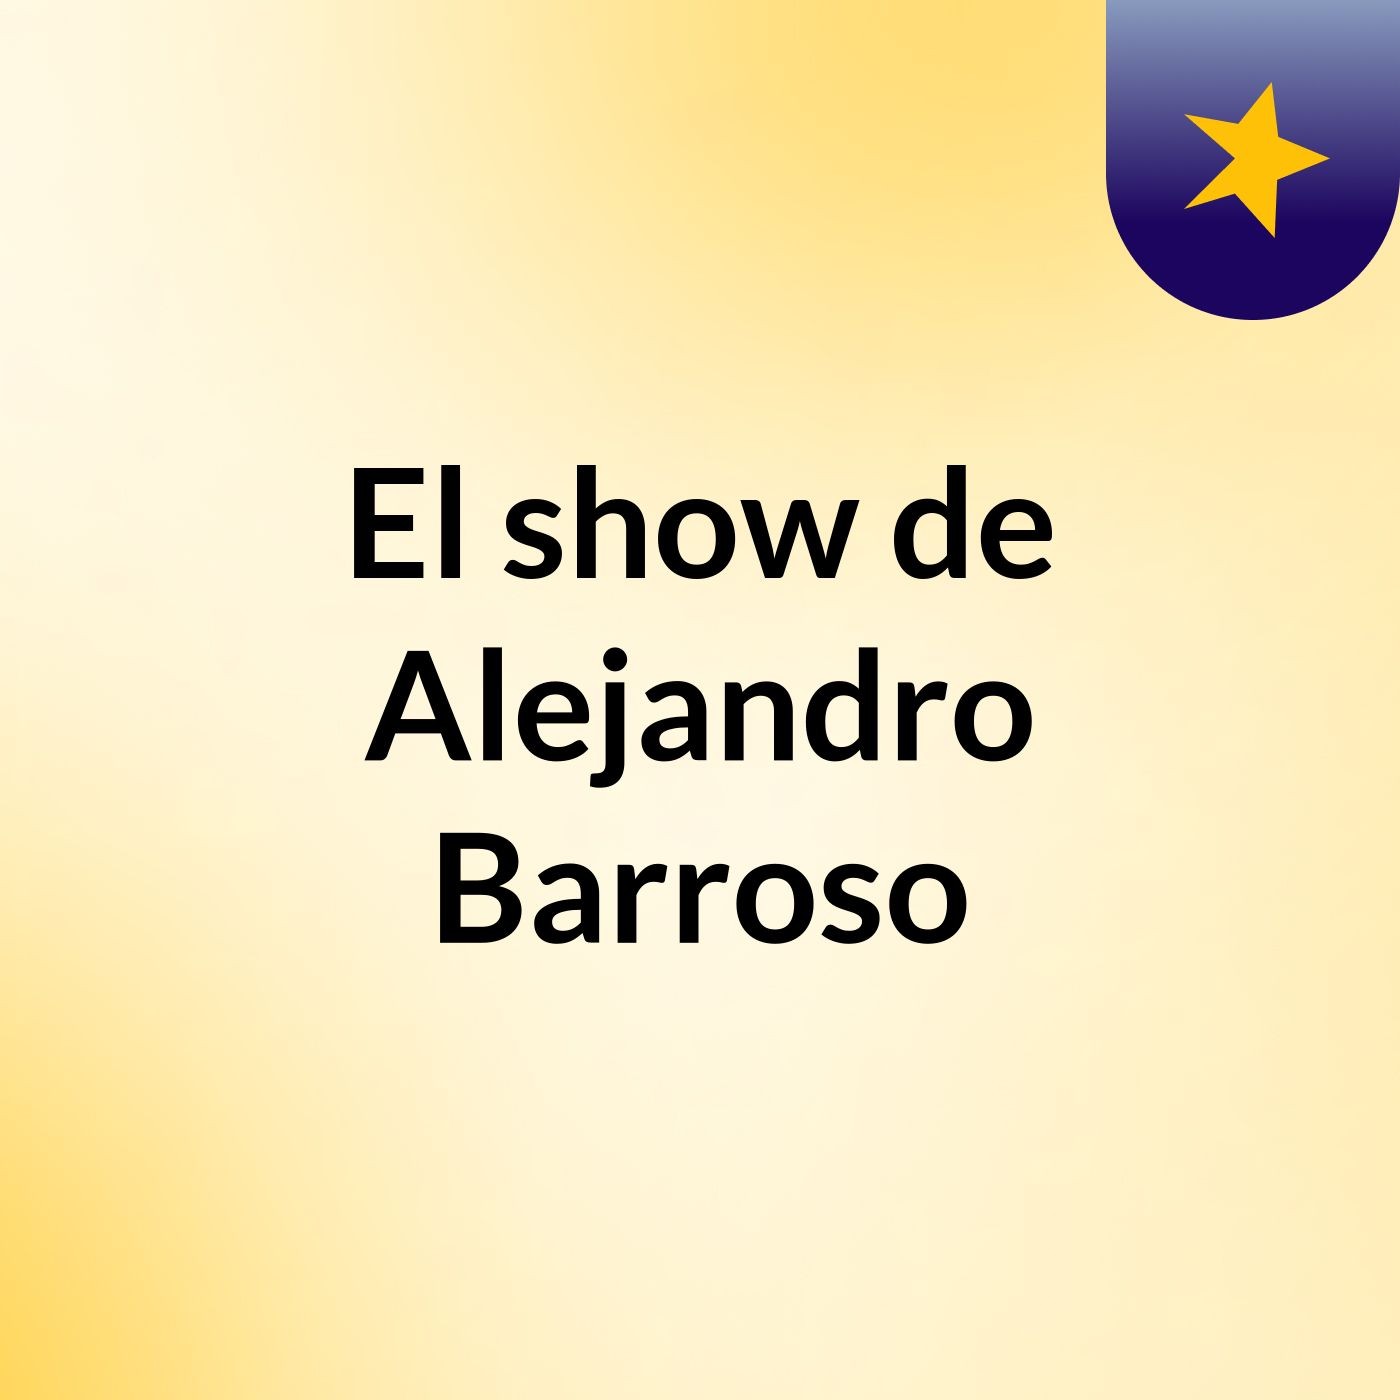 El show de Alejandro Barroso